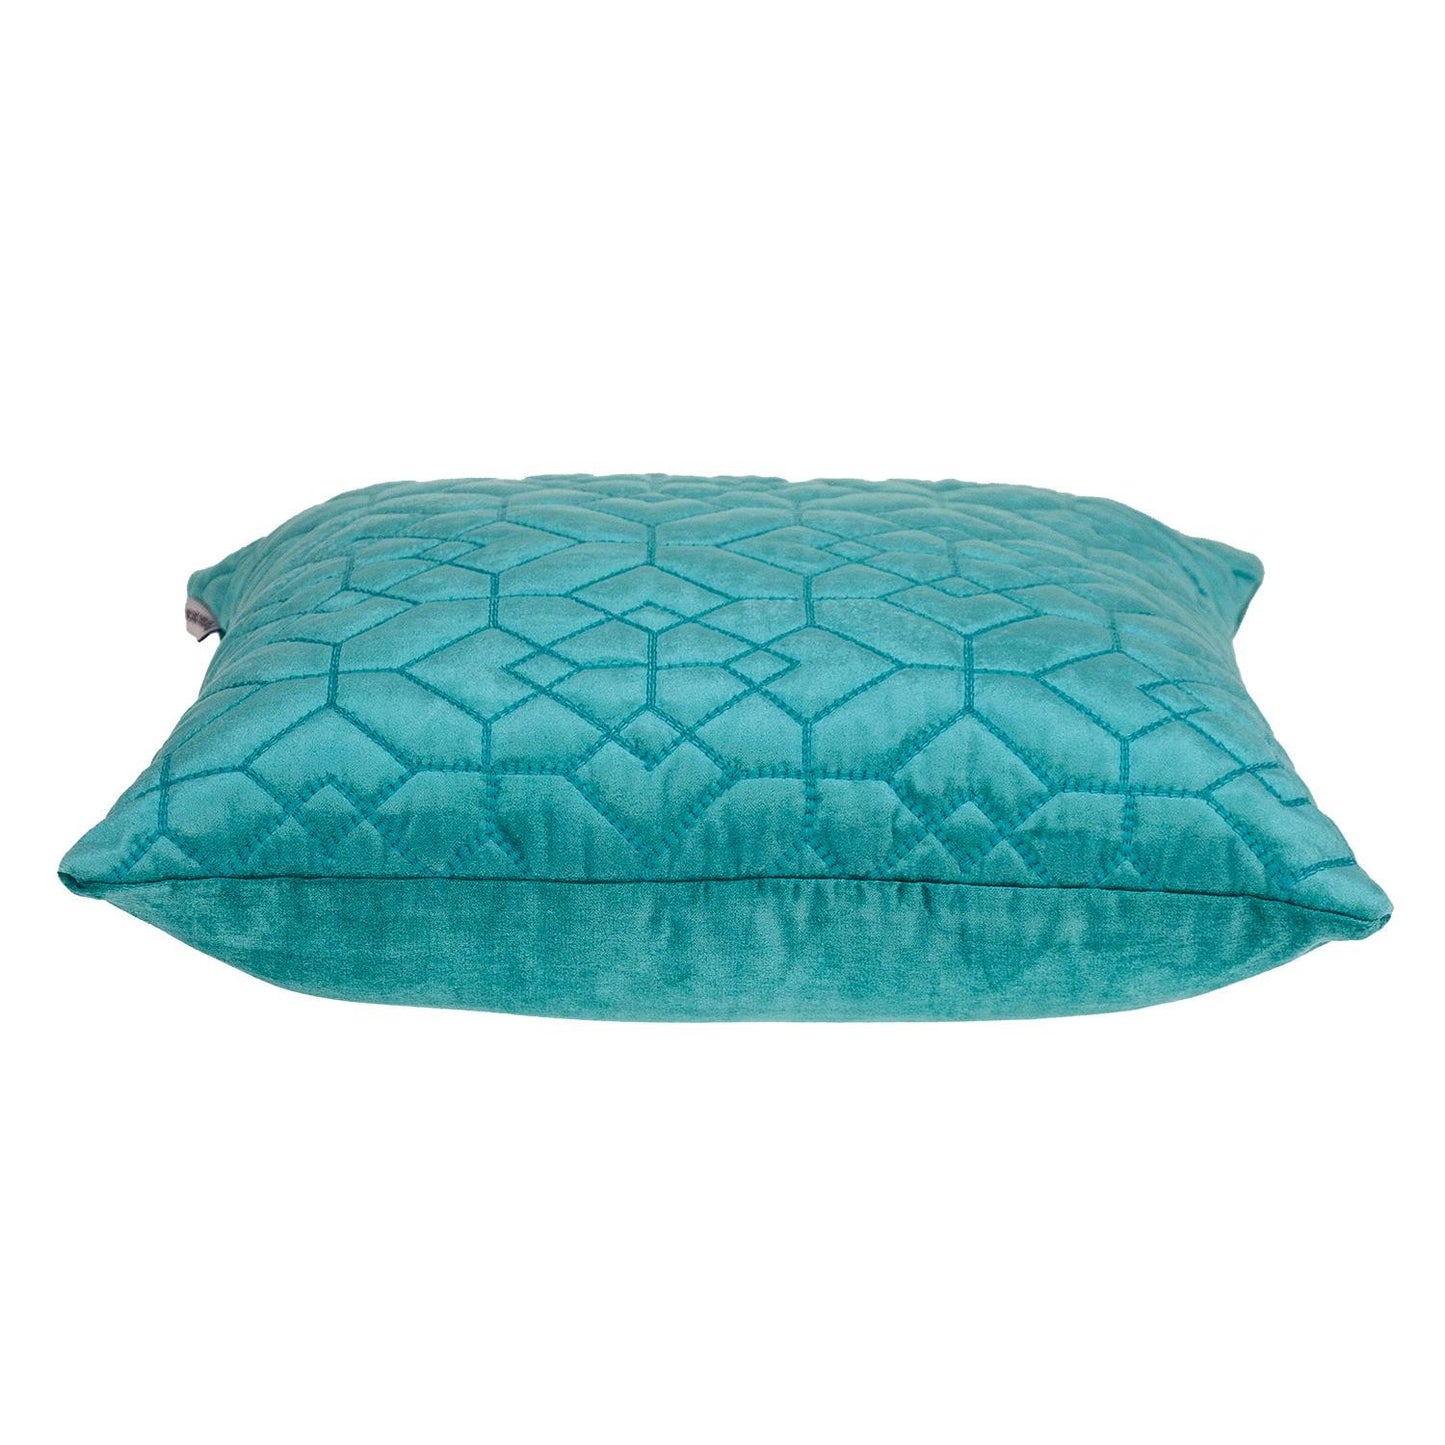 Aqua Quilted Velvet Geo Decorative Throw Pillow